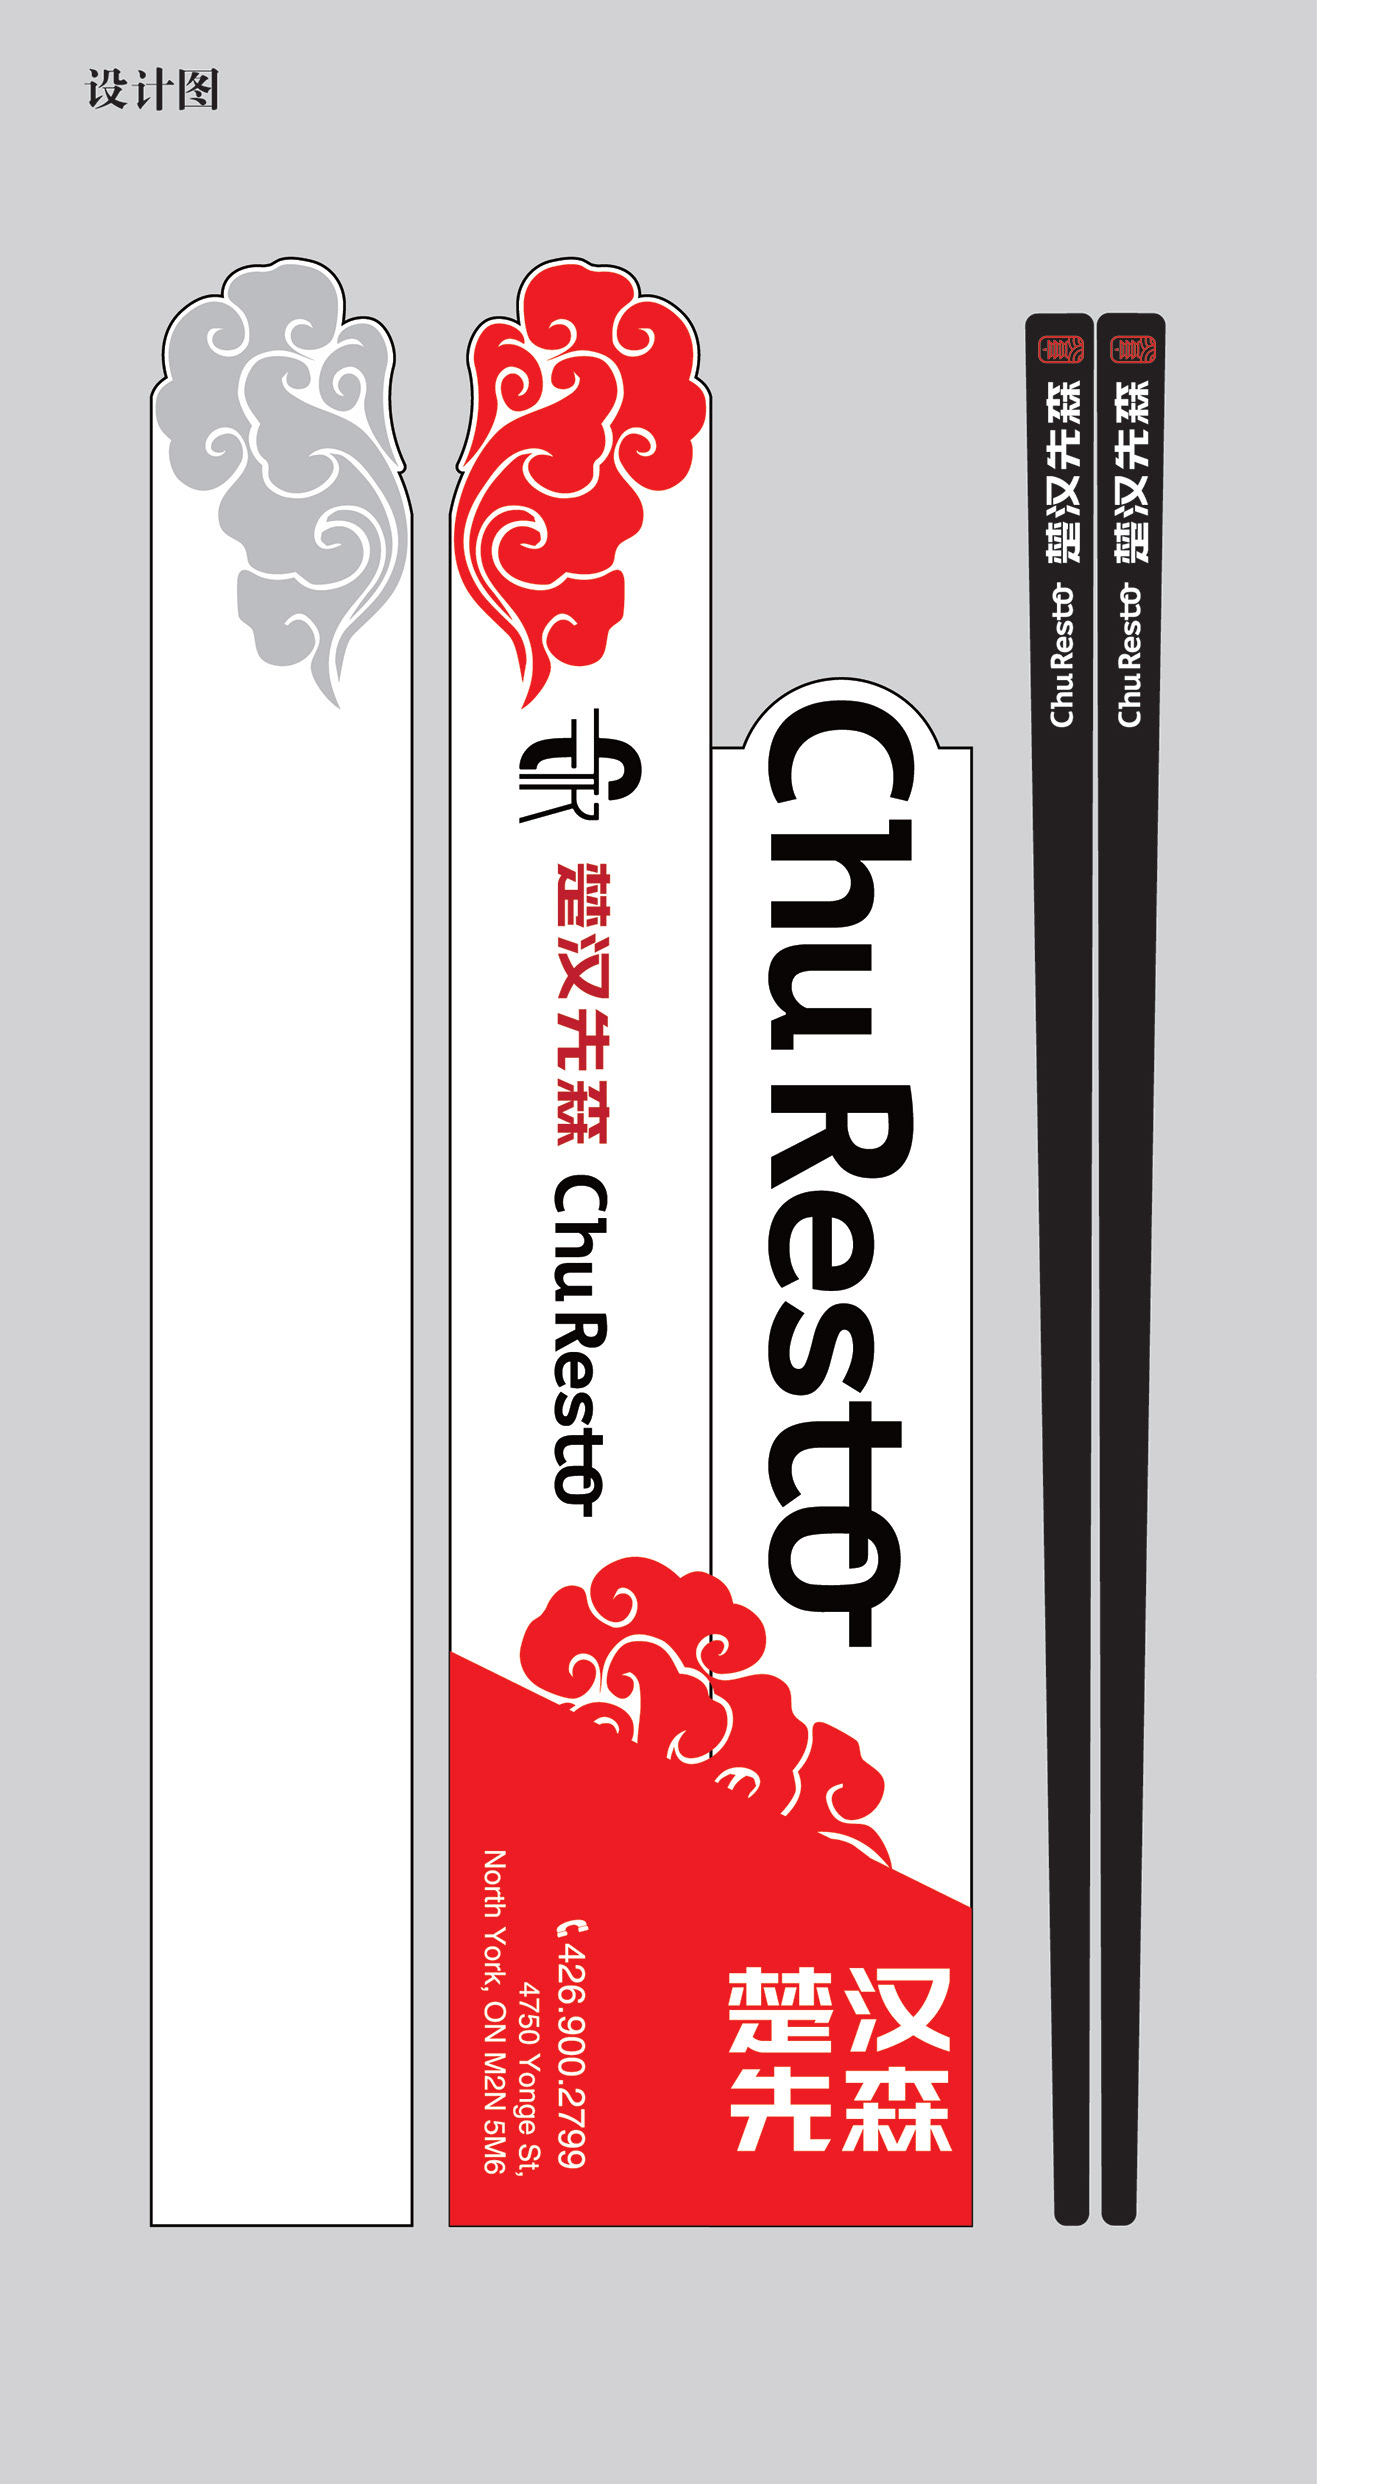 Chopsticks cover design